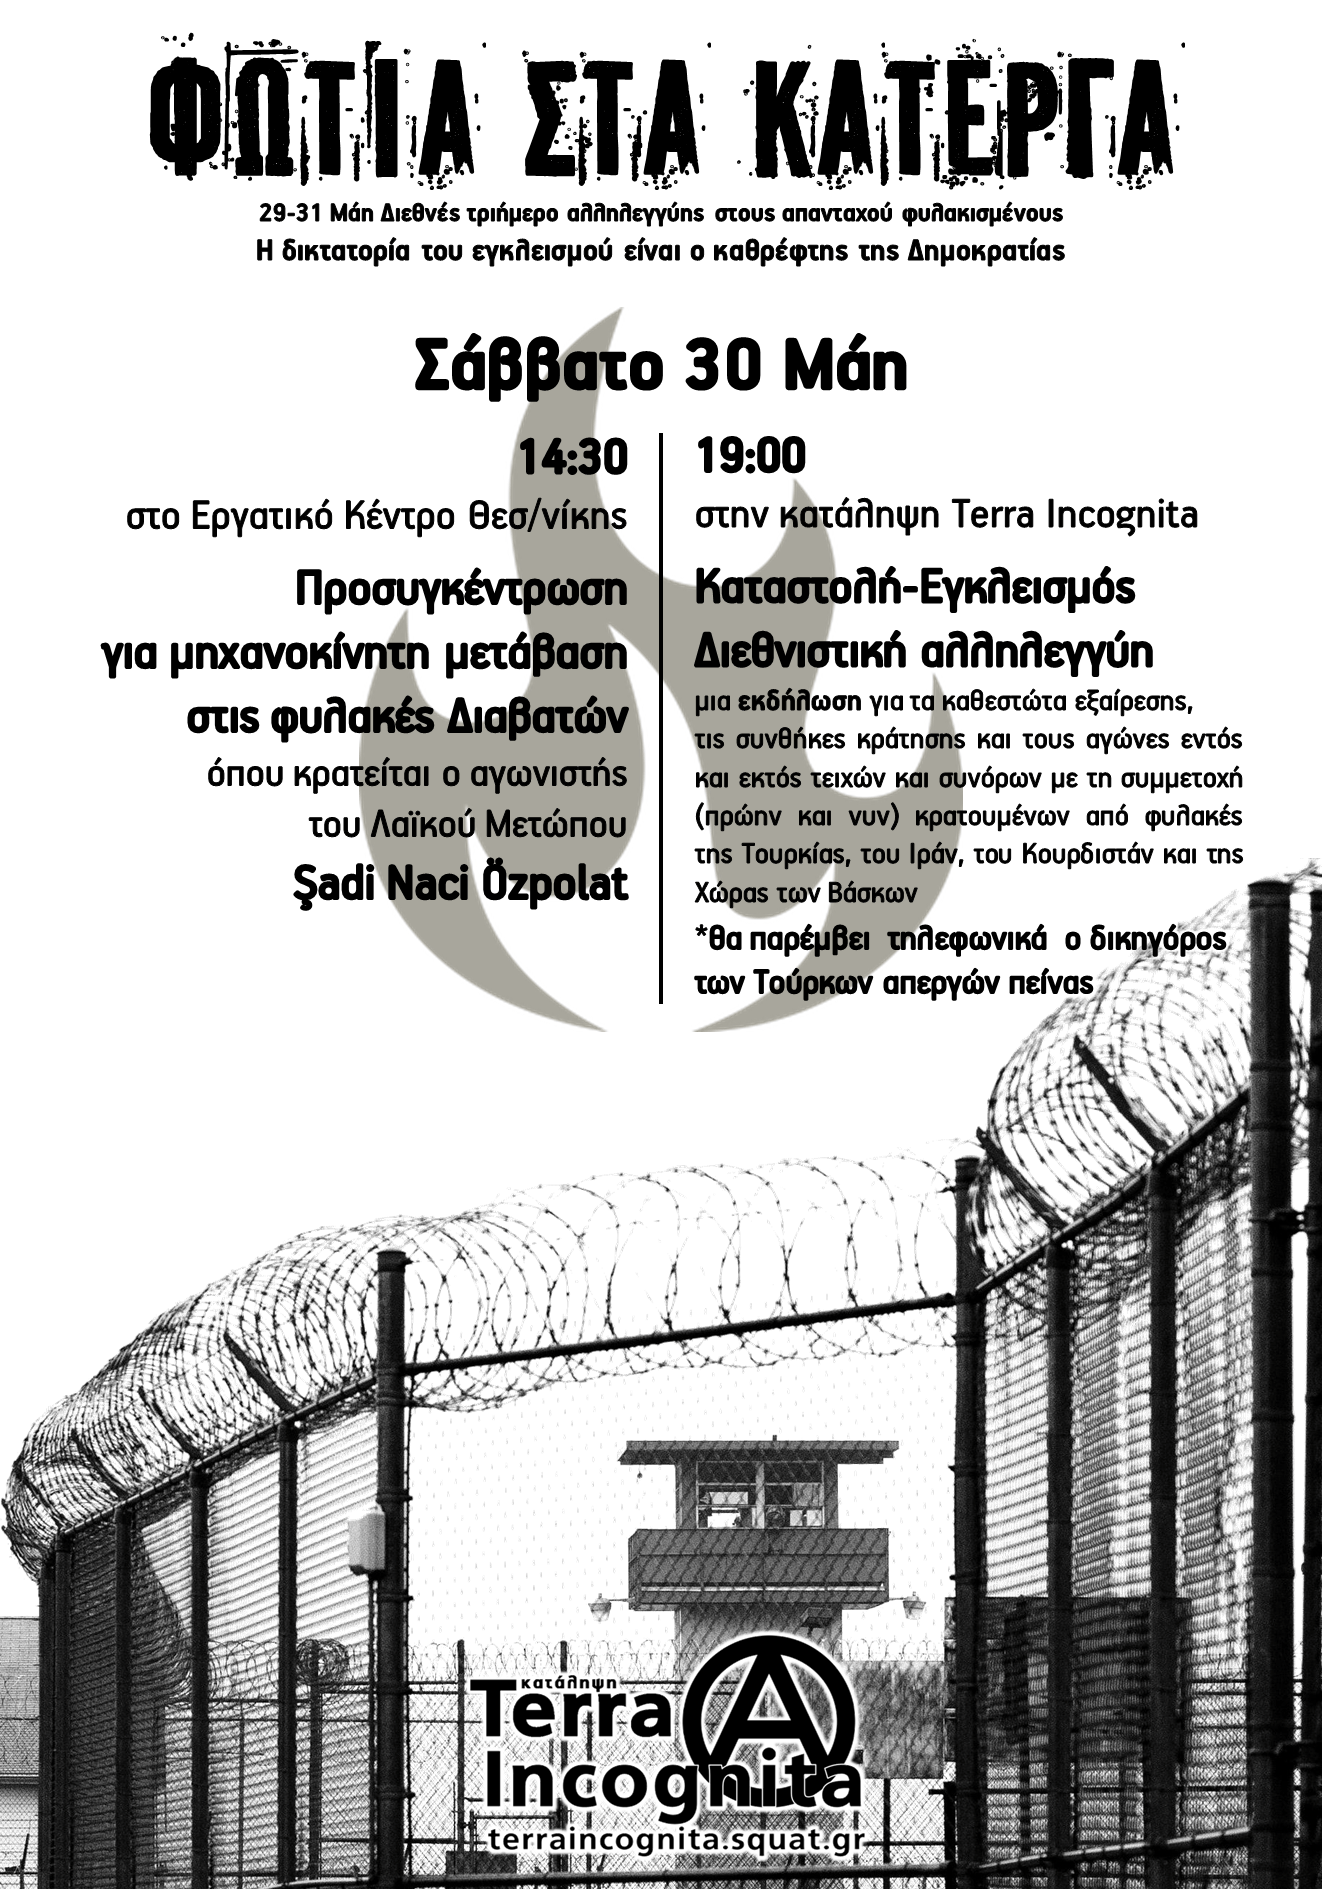 Ενημέρωση από τις δράσεις για το διεθνές 3μερο αλληλεγγύης στους απανταχού φυλακισμένους